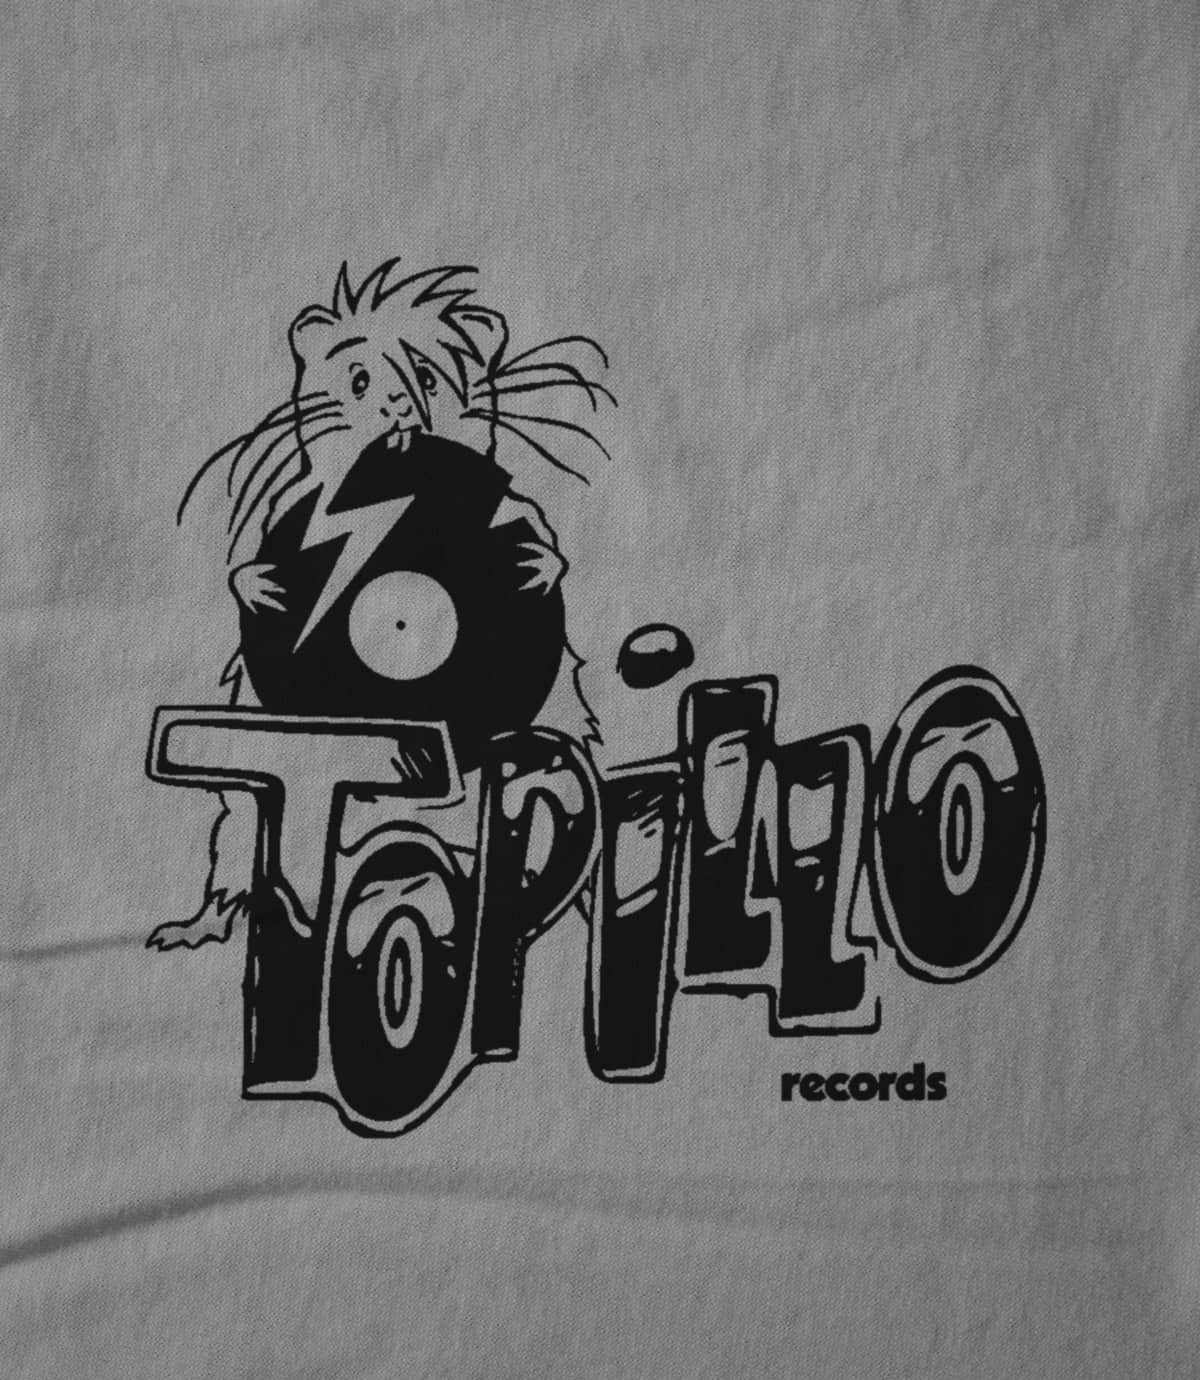 Topillo Records